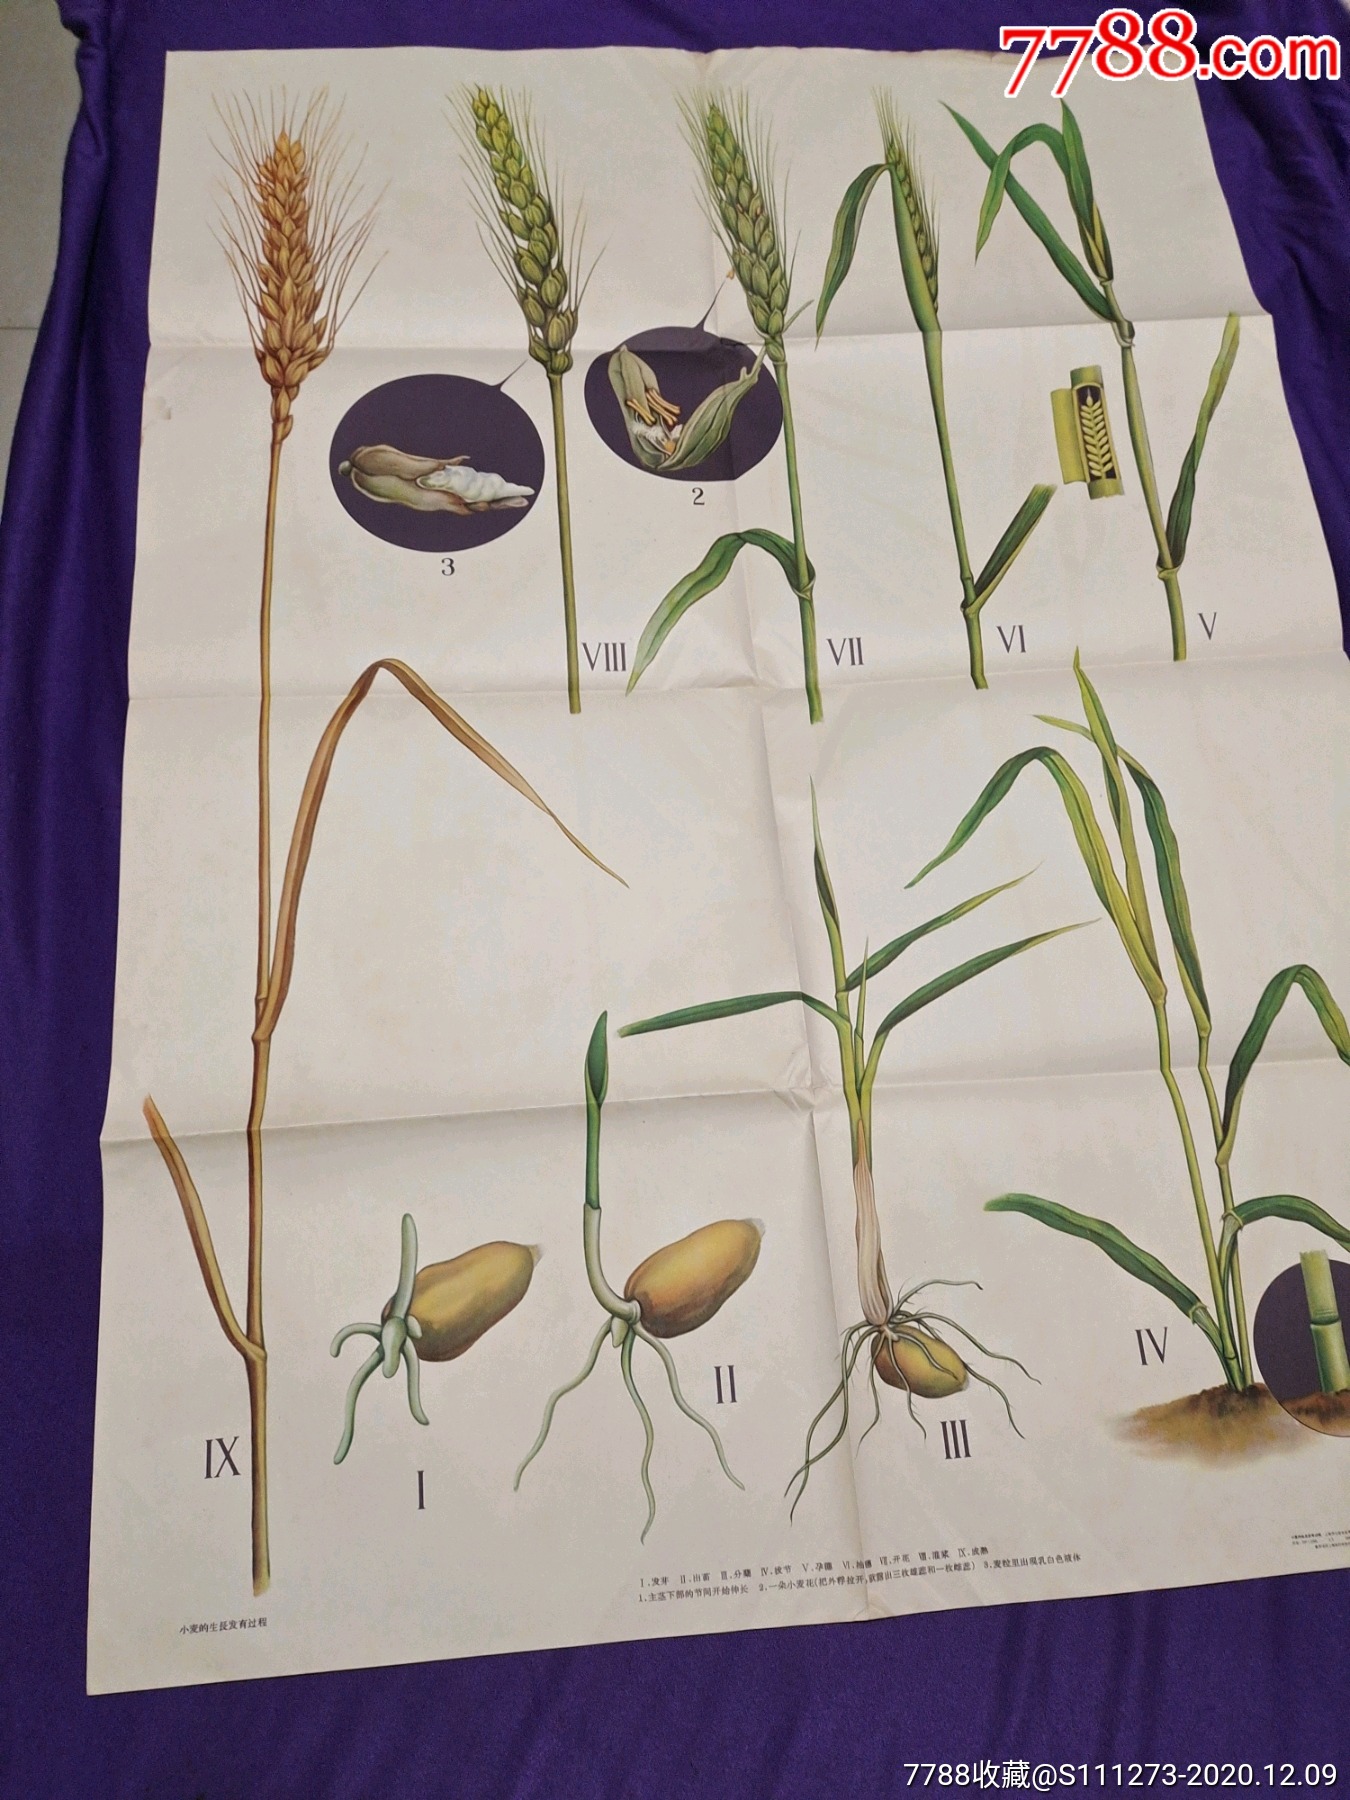 小麦幼穗分化时期图片